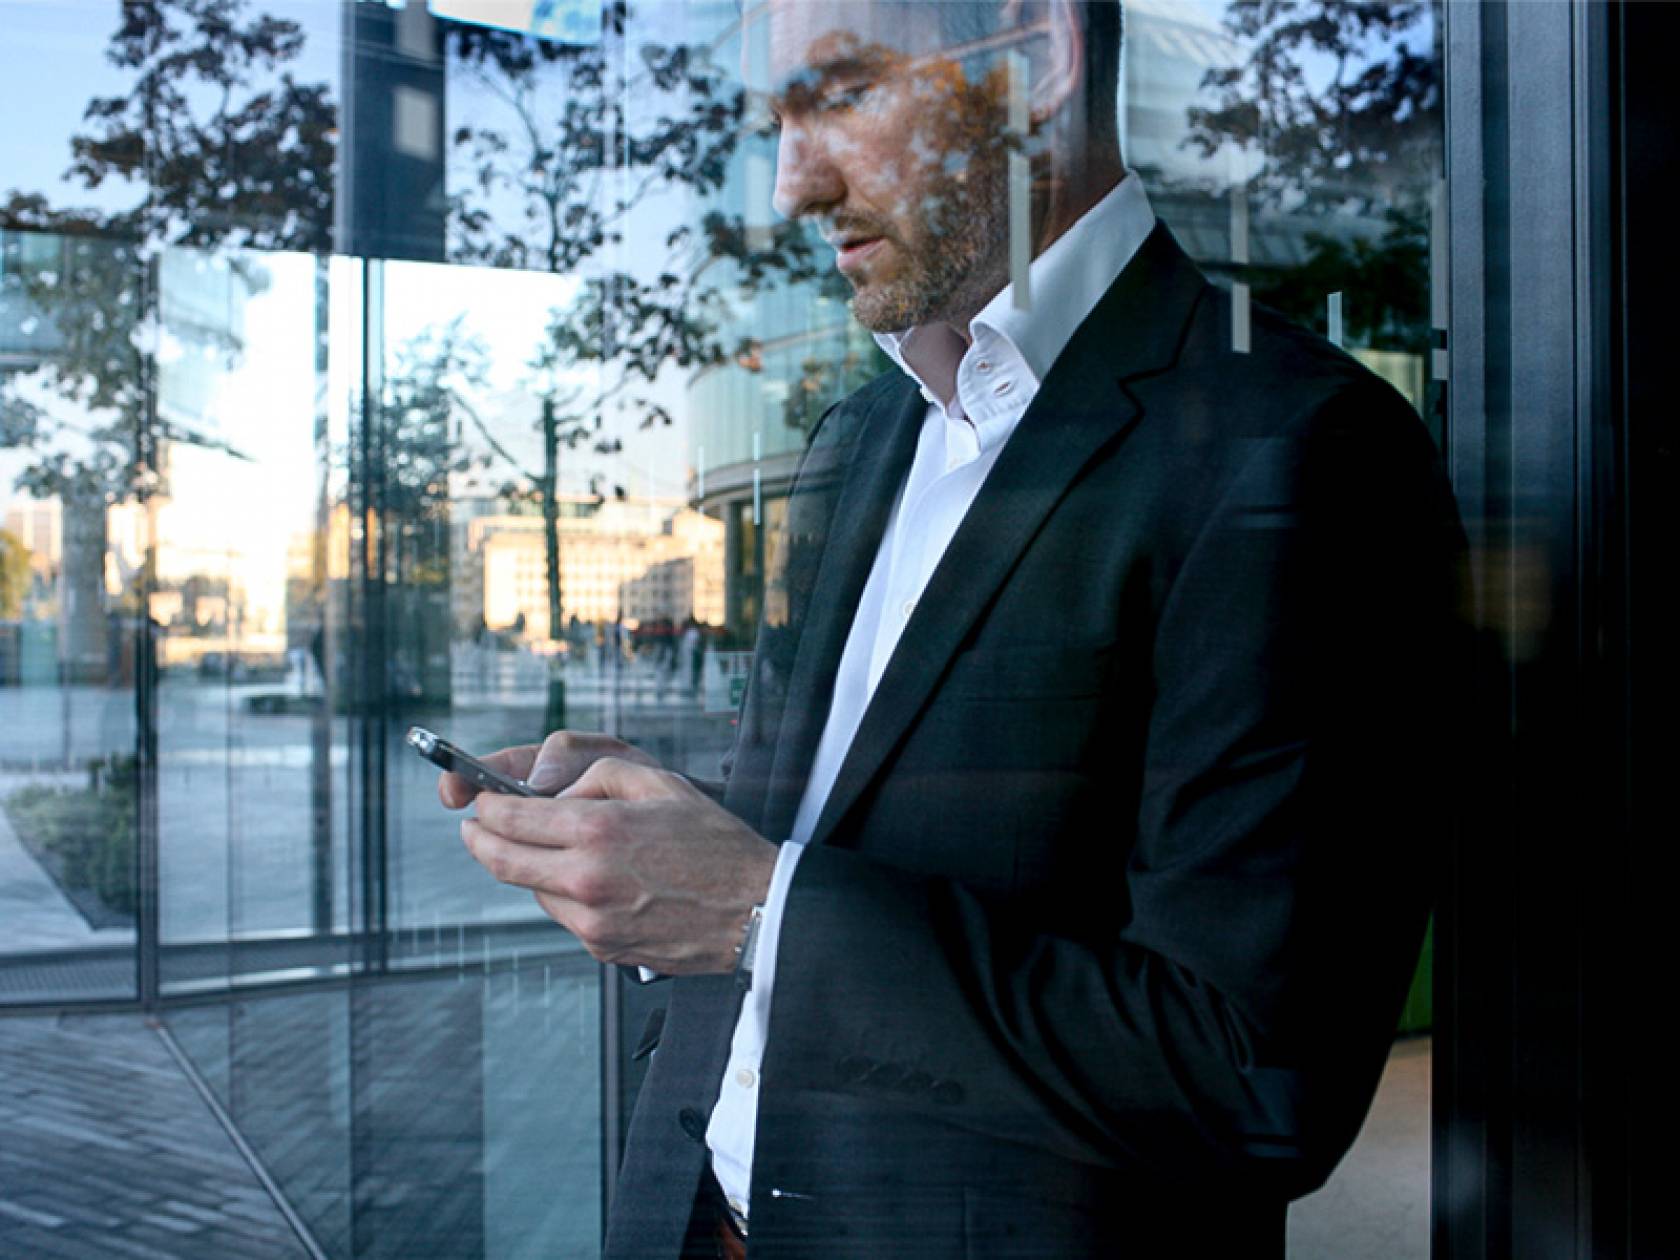 Schmuckbild Self Services und Apps Mann steht hinter einer Glasscheibe und schaut auf sein Smartphone